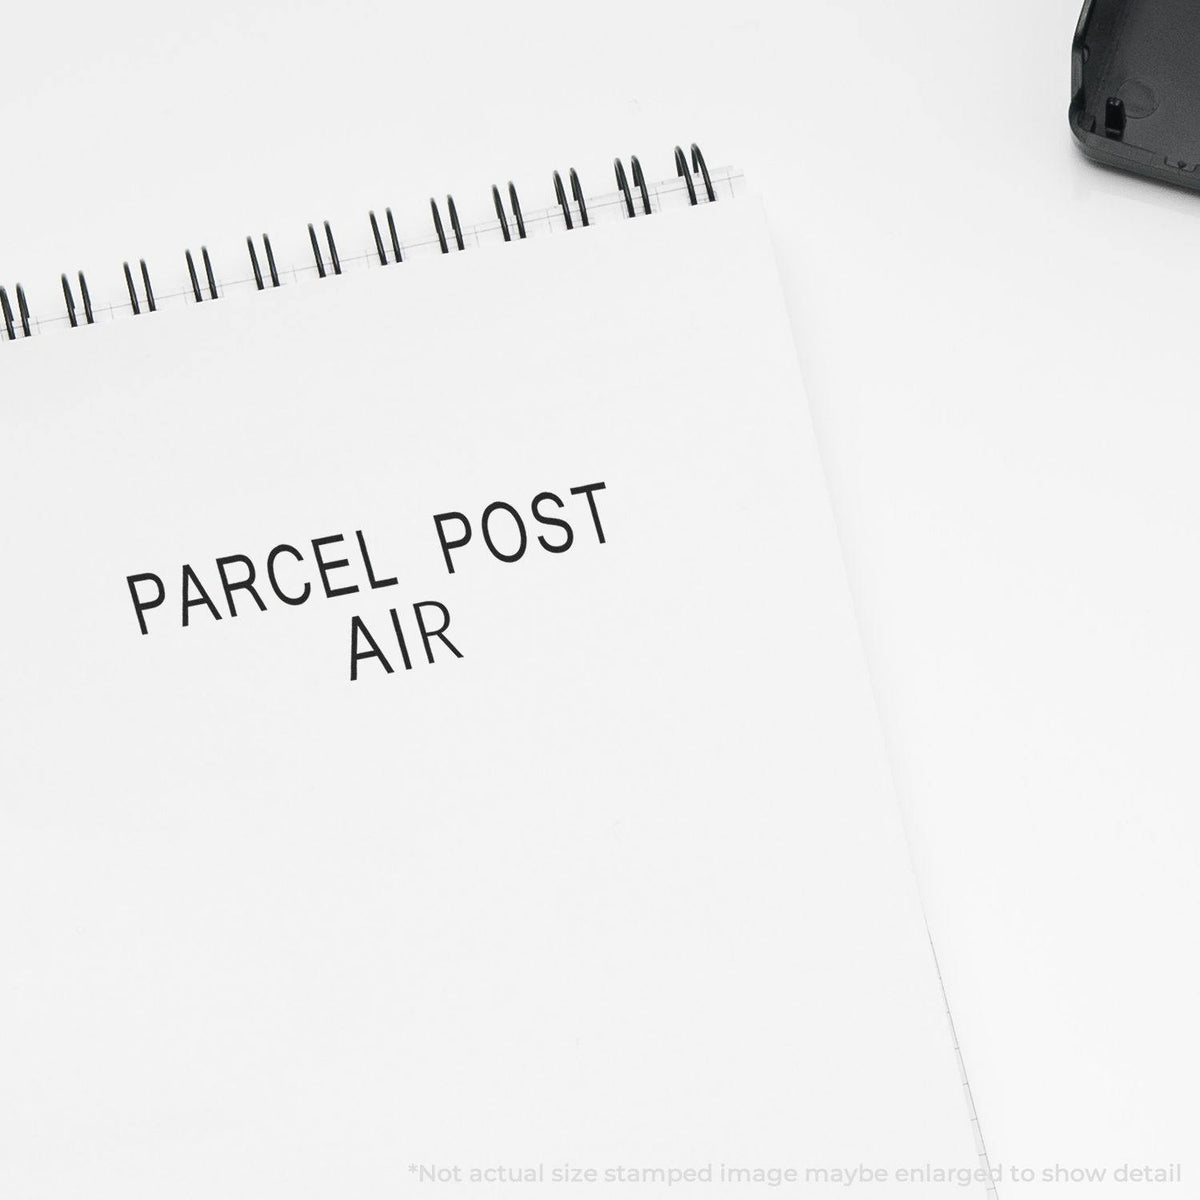 Slim Pre-Inked Parcel Post Air Stamp In Use Photo